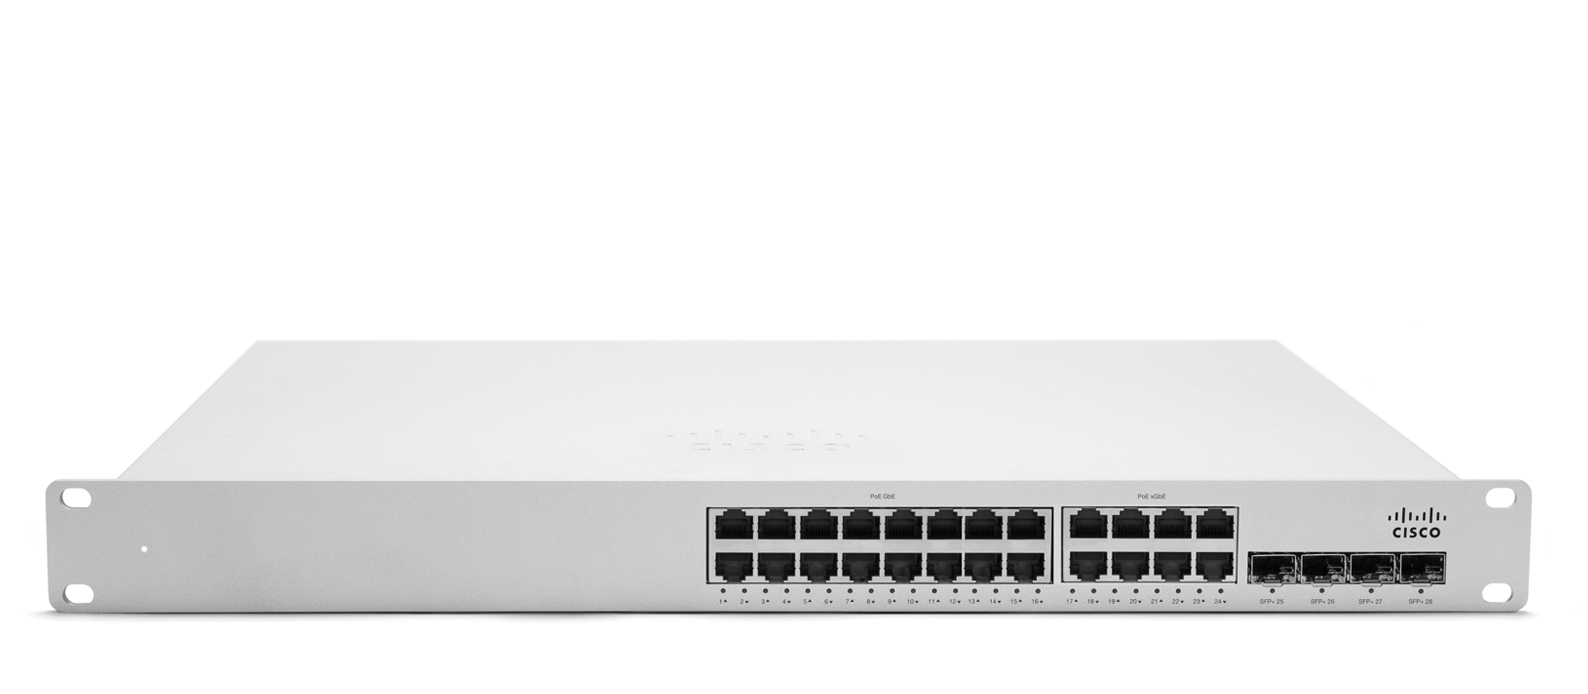 Cisco Meraki MS350-24X Cloud Managed Switch